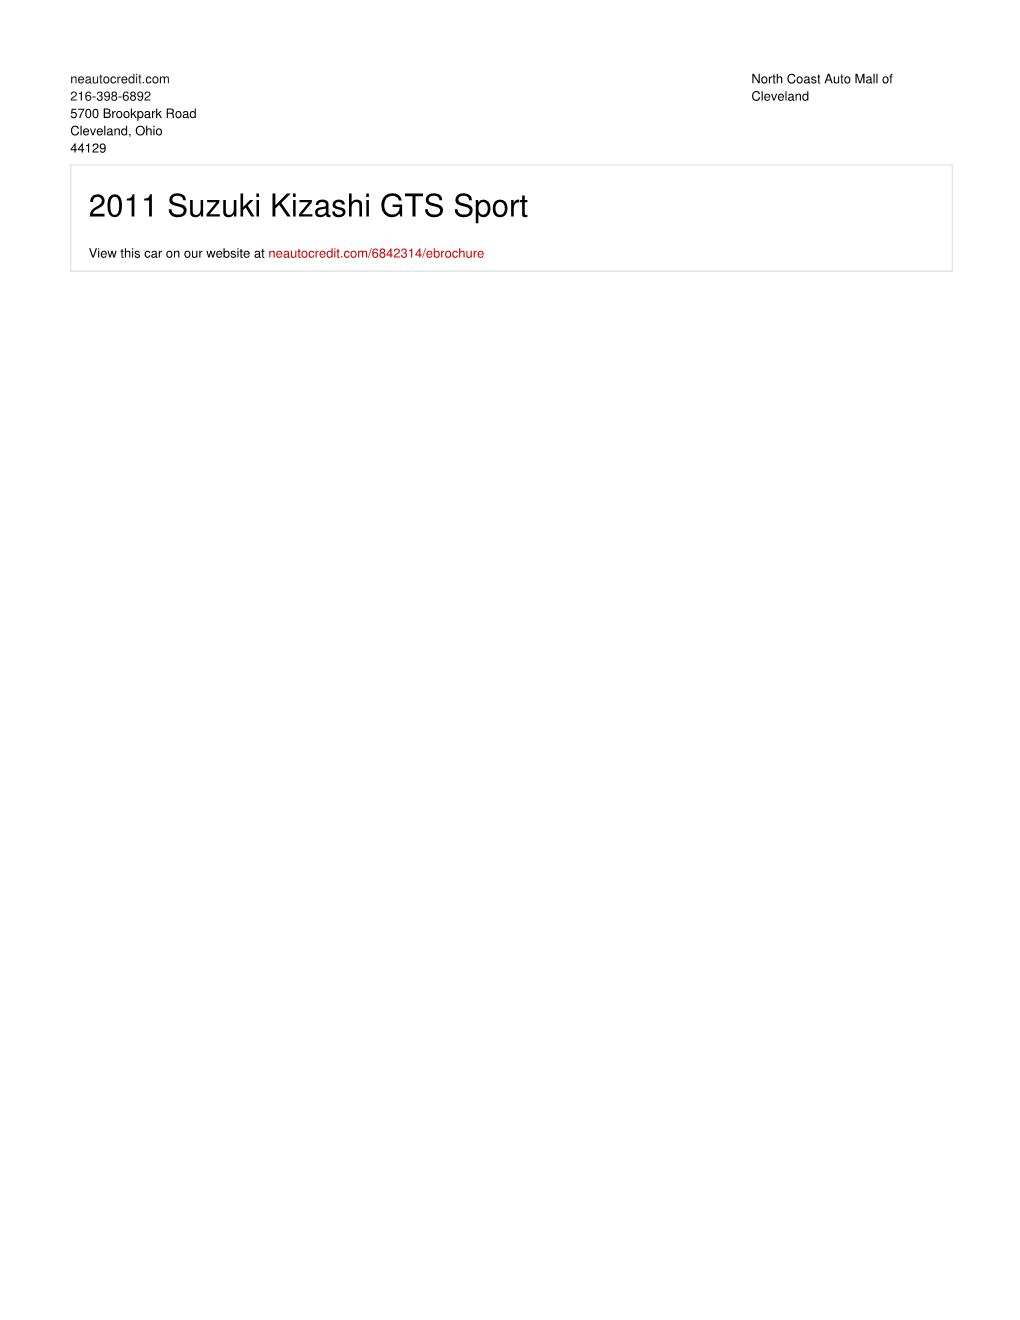 2011 Suzuki Kizashi GTS Sport